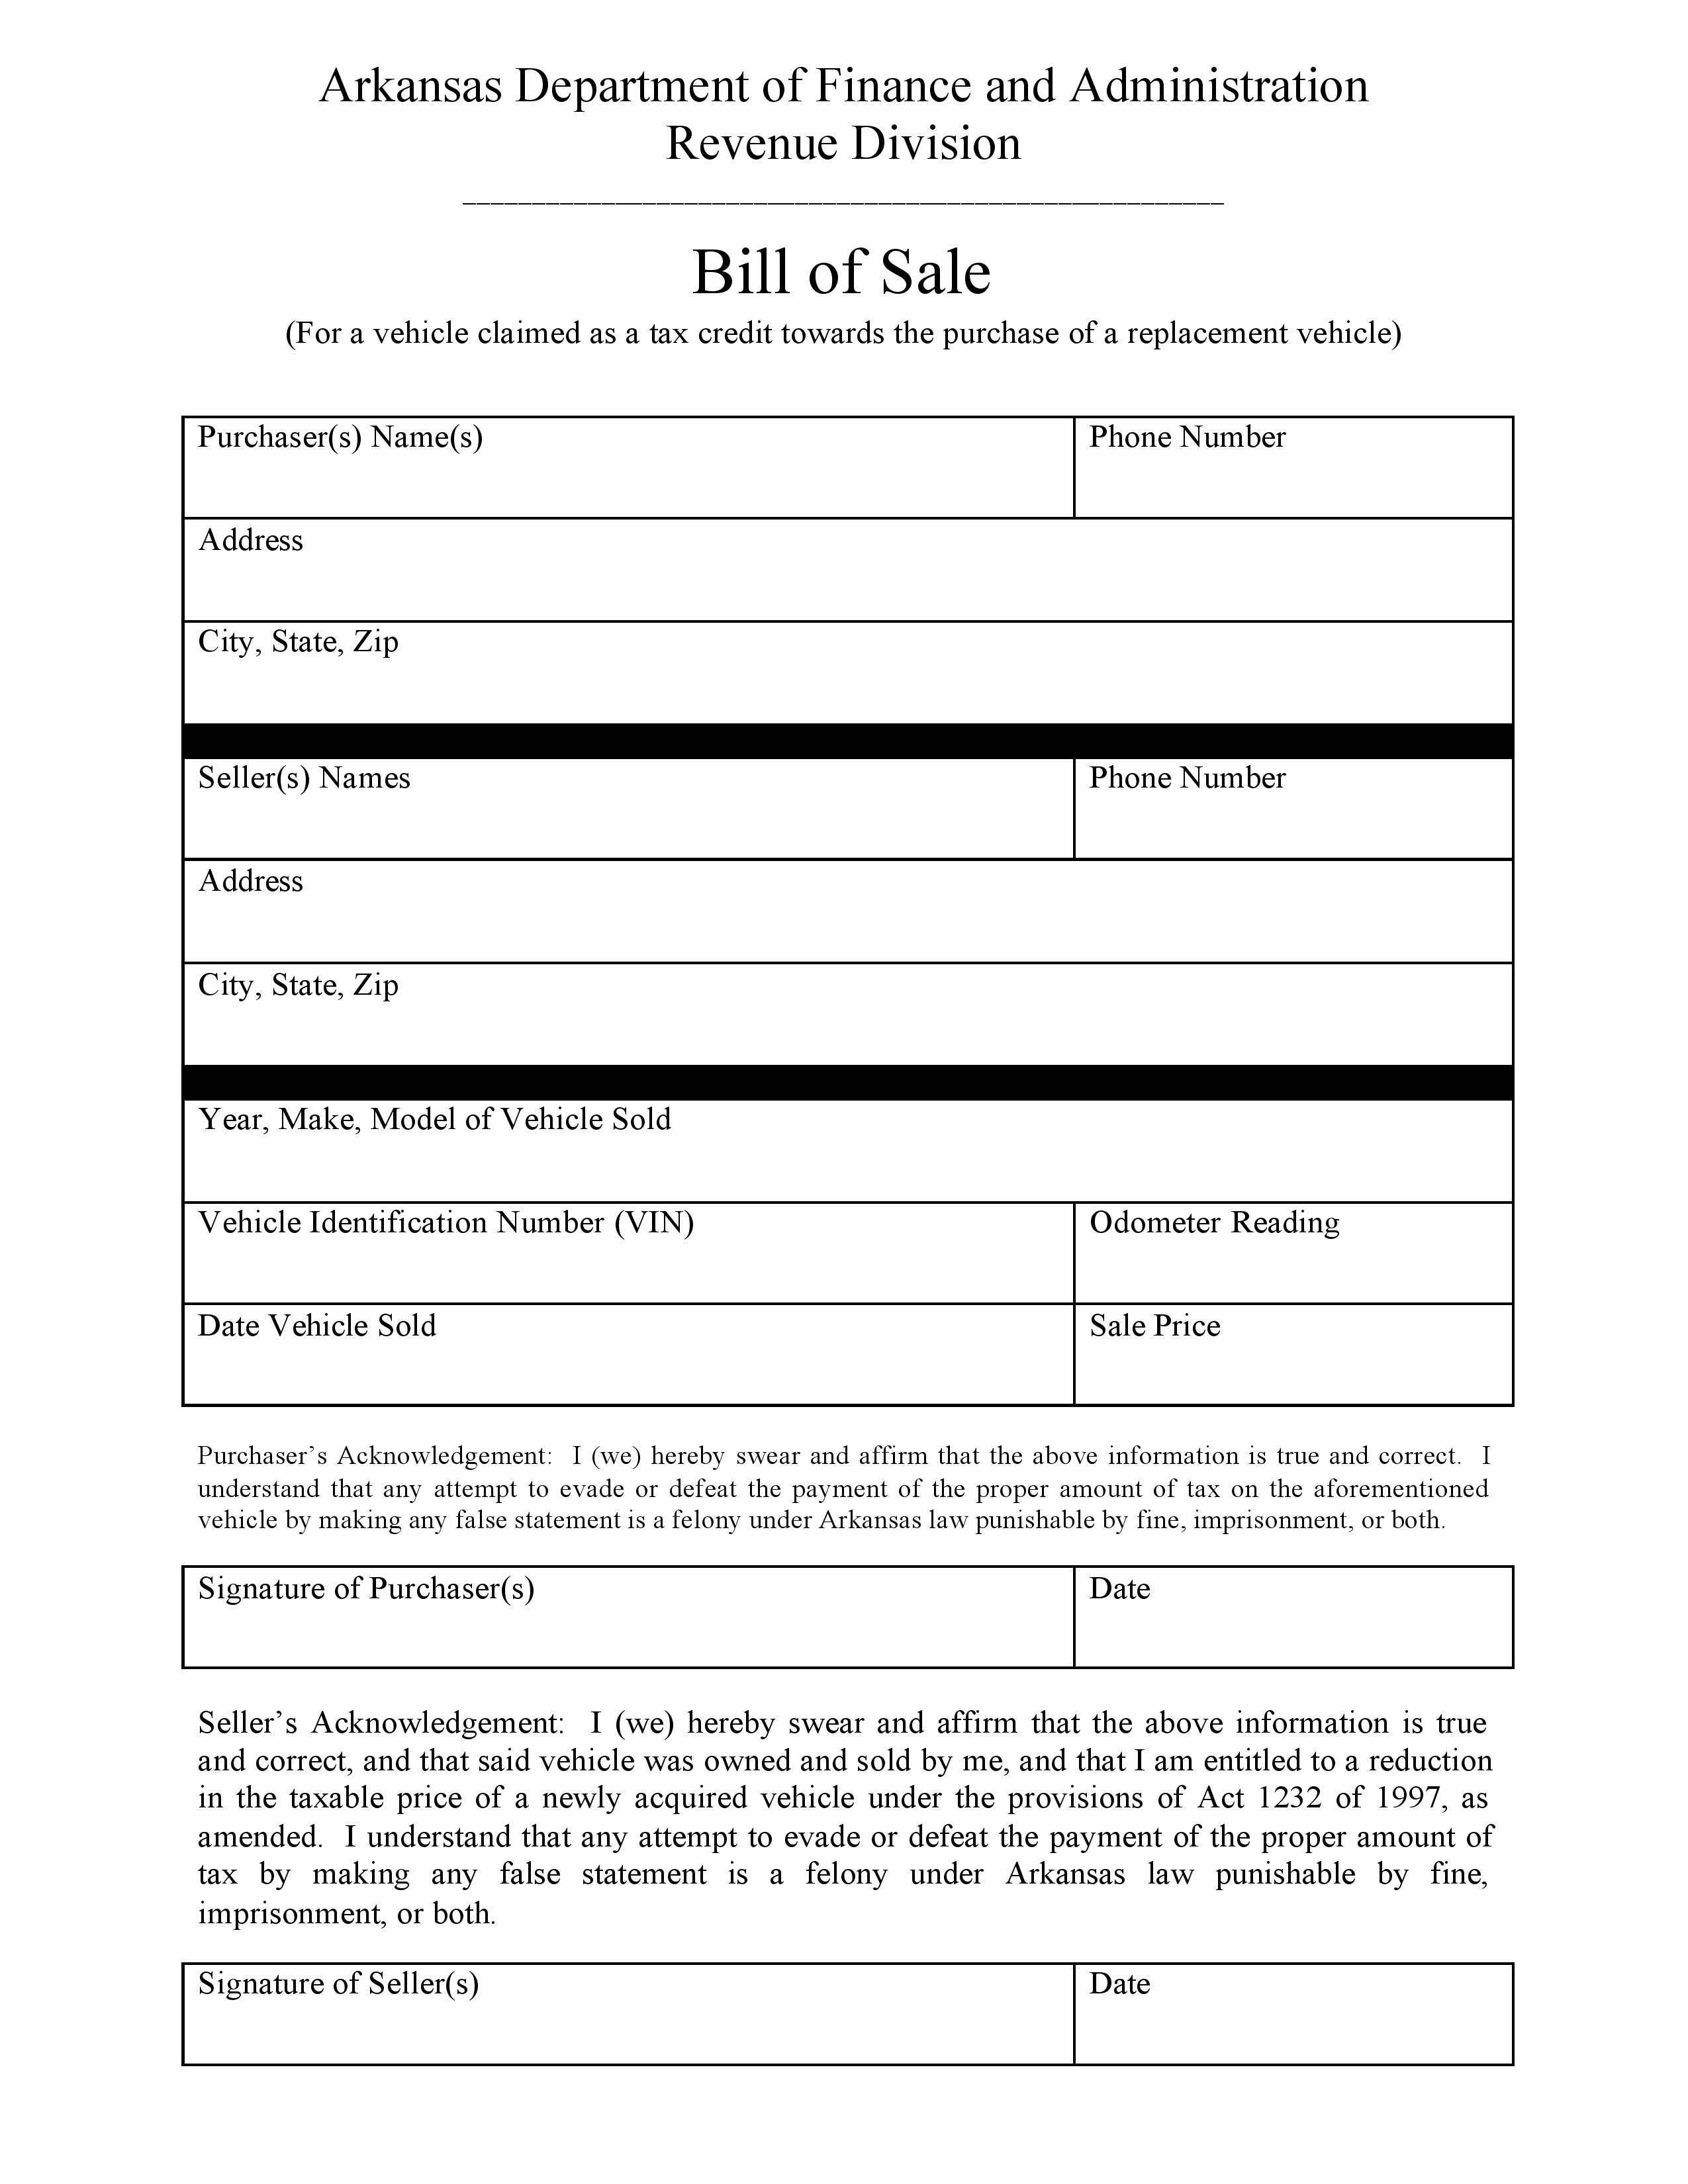 Free Bill Of Sale Dmv Fresh Free Arkansas Dmv Bill Of Sale form Pdf